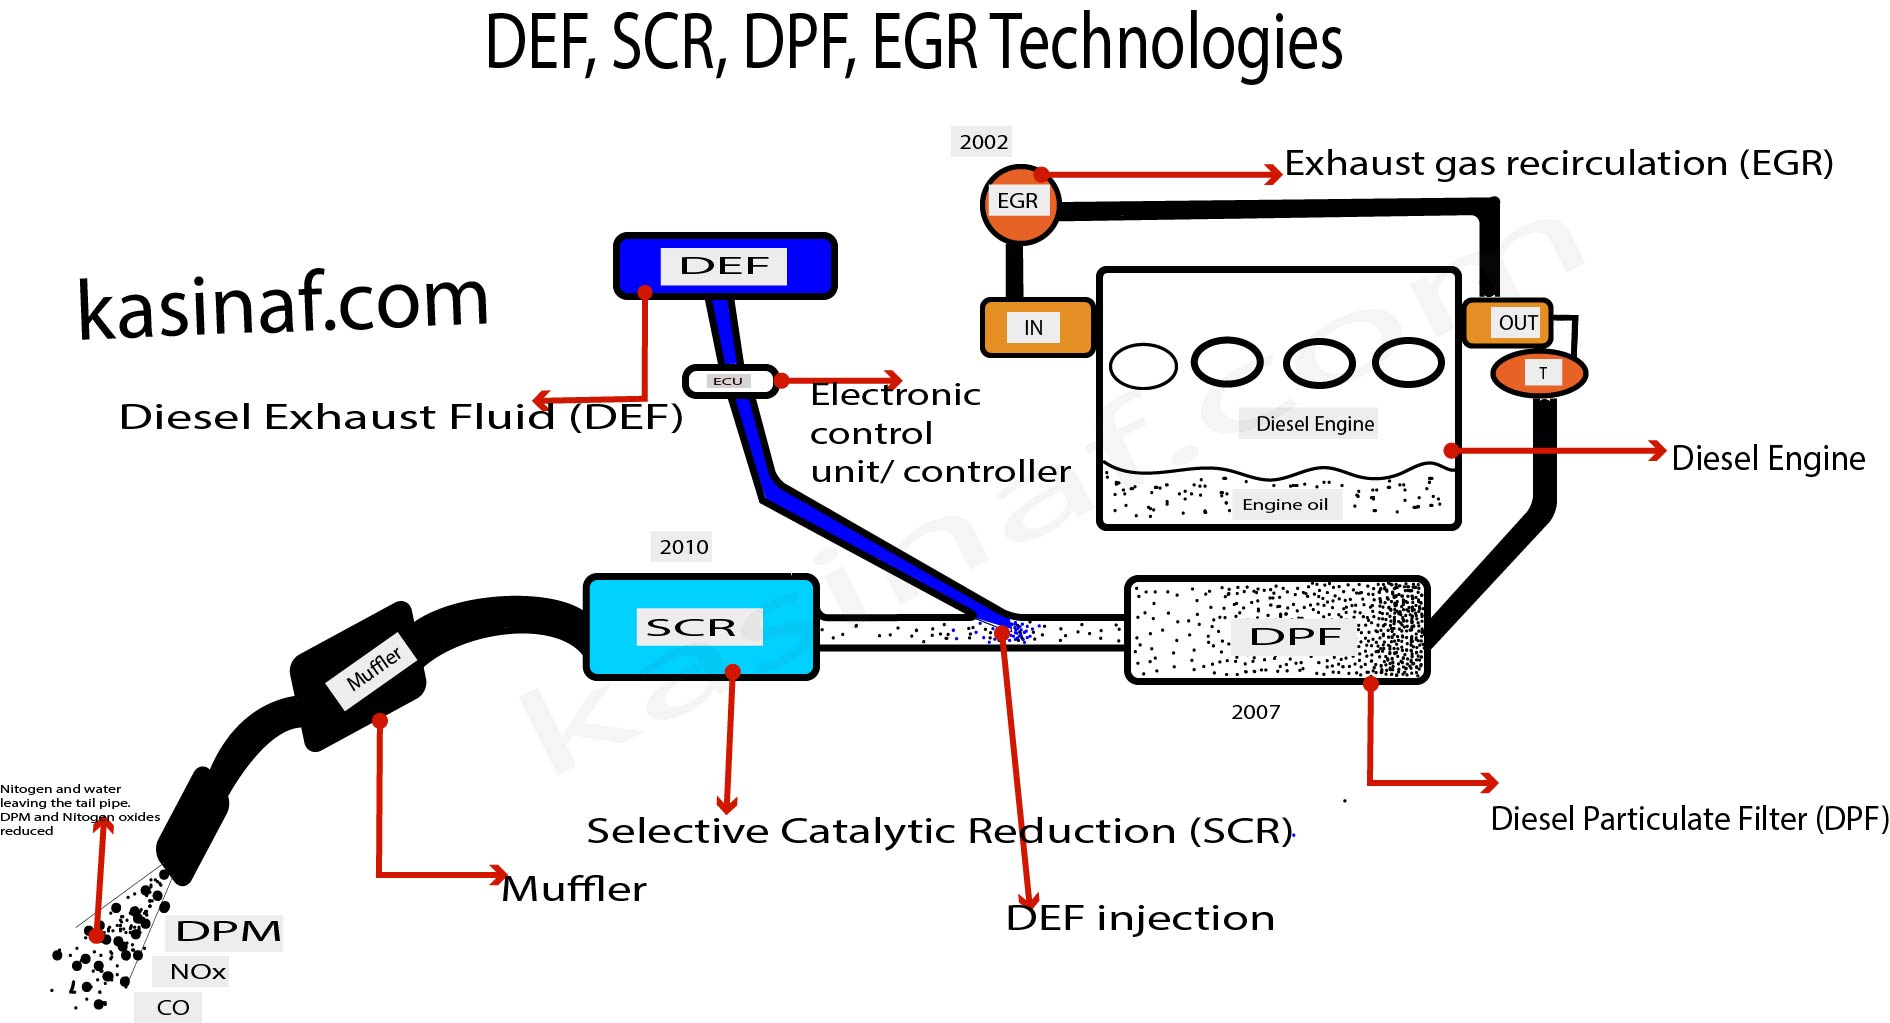 DEF, SCR, DPF, EGR Technologies